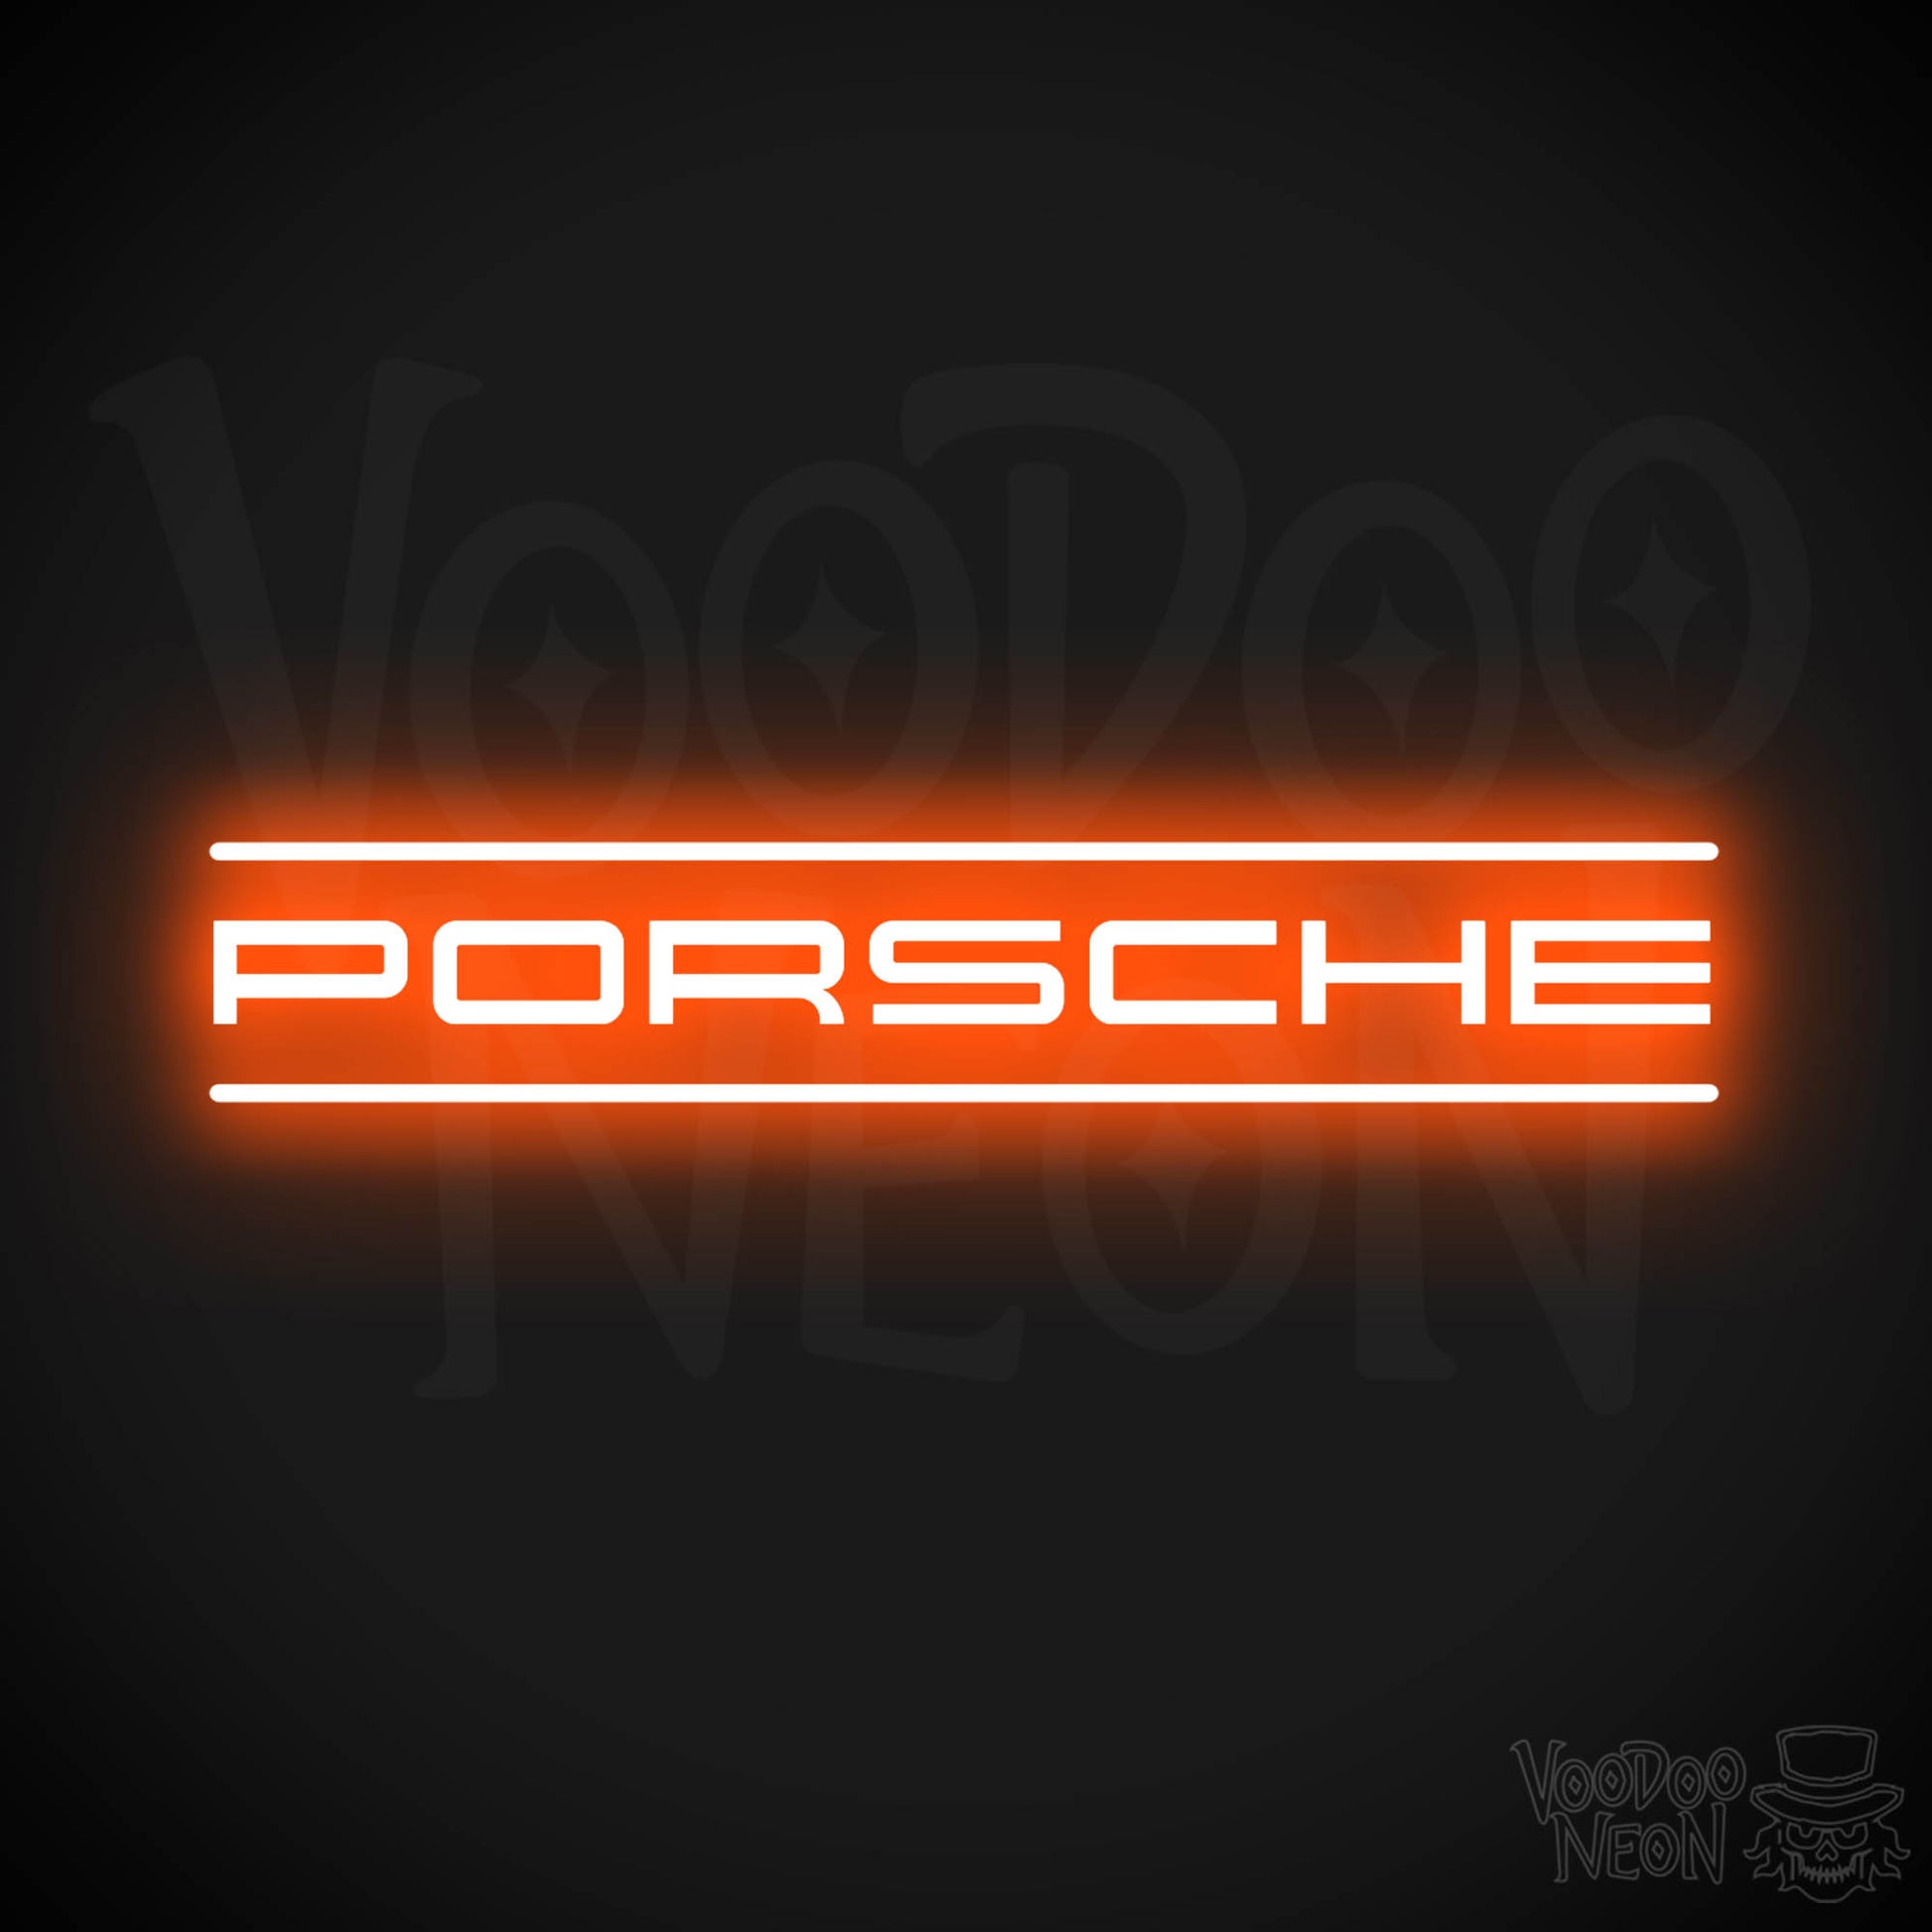 Porsche Neon Sign - Porsche Sign - Porsche Decor - Wall Art - Color Orange